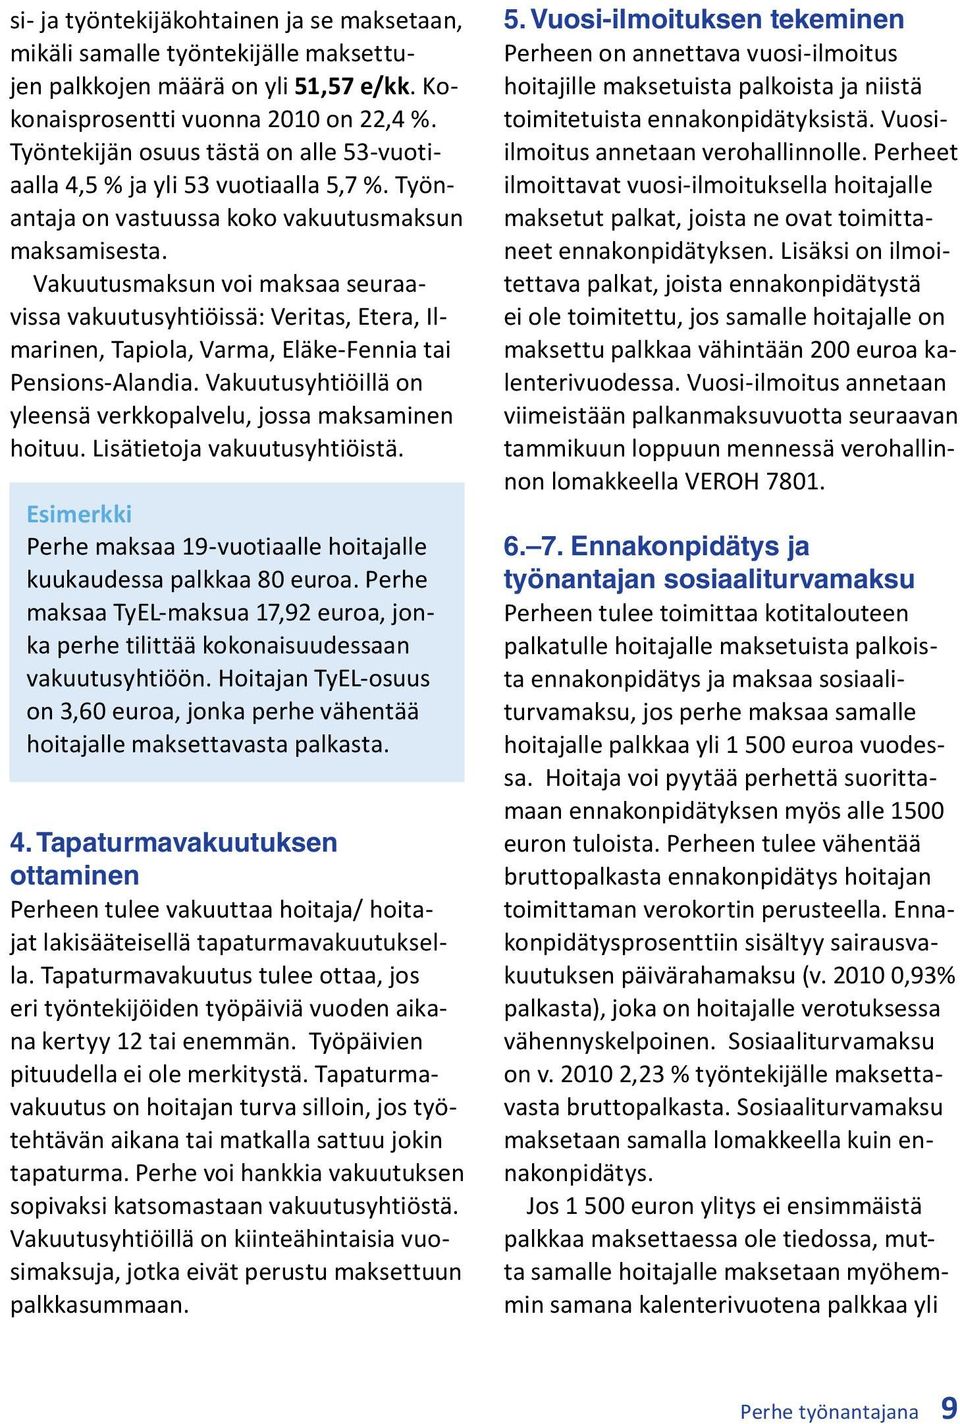 Vakuutusmaksun voi maksaa seuraavissa vakuutusyhtiöissä: Veritas, Etera, Ilmarinen, Tapiola, Varma, Eläke-Fennia tai Pensions-Alandia.